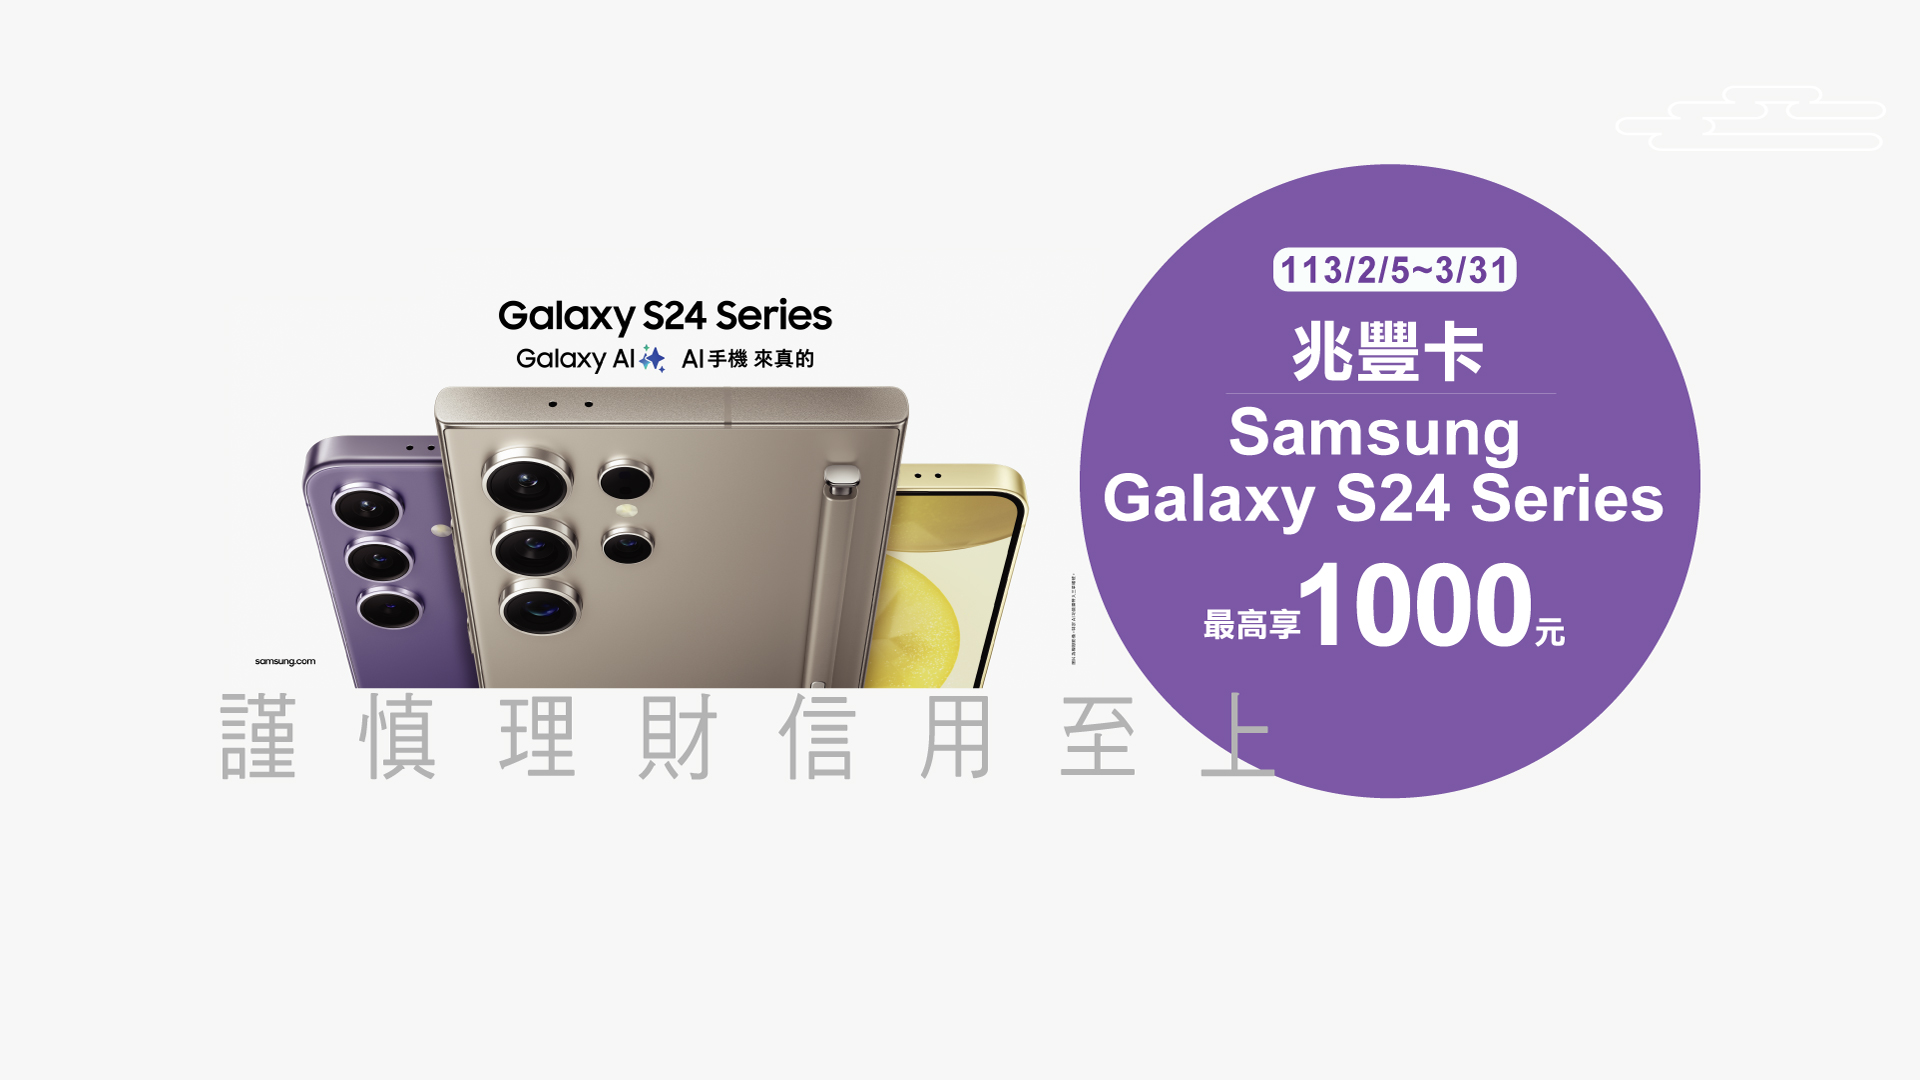 「兆豐卡Samsung Galaxy S24 Series最高享1000元」Banner